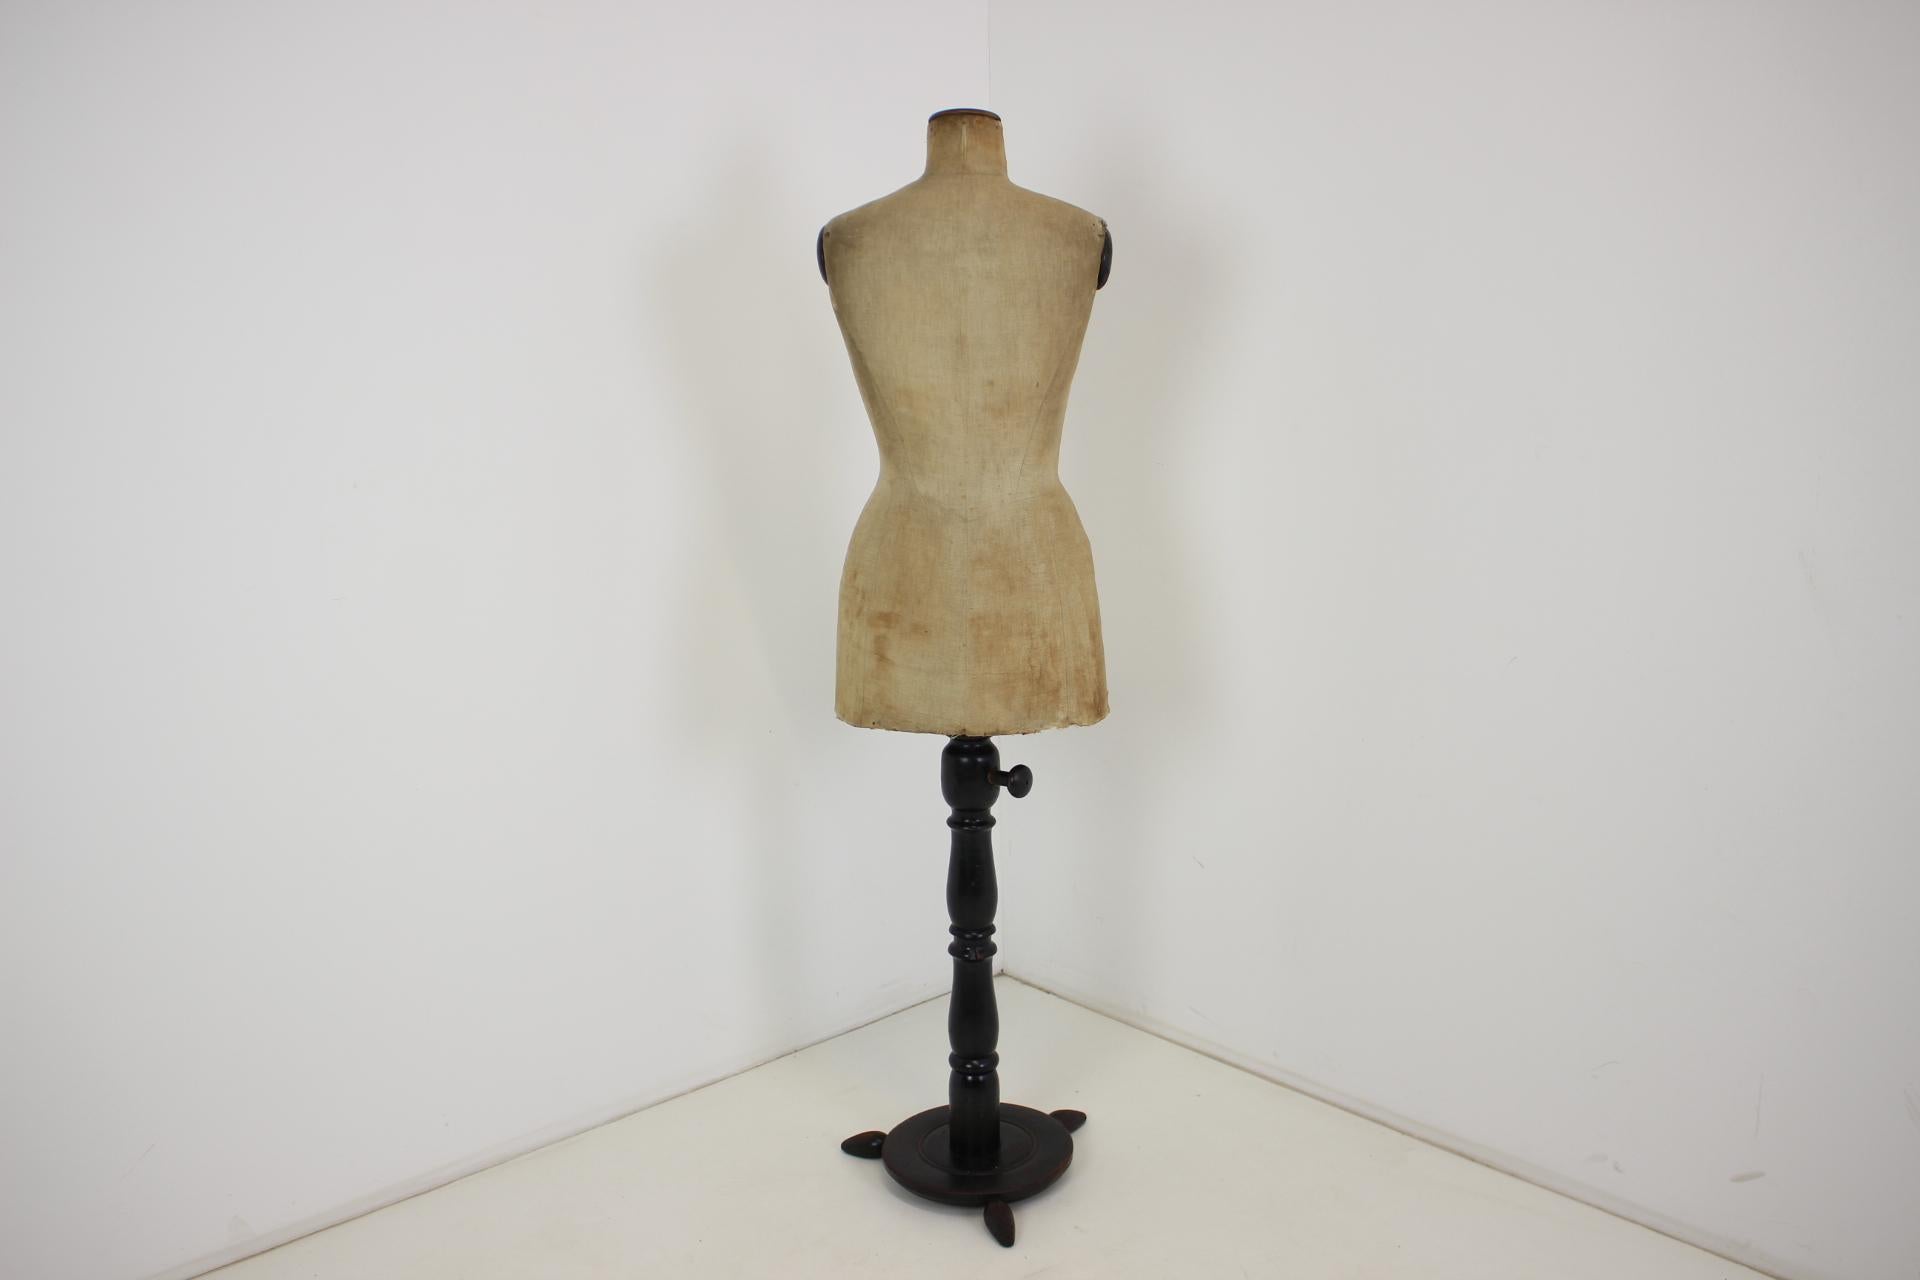 -Vierge de tailleur à hauteur réglable, années 1920
- Fabriqué en bois, tissu et papier dur
-La partie inférieure de la vierge présente des signes de légers dommages
-La hauteur de l'extension complète est de 183 cm.